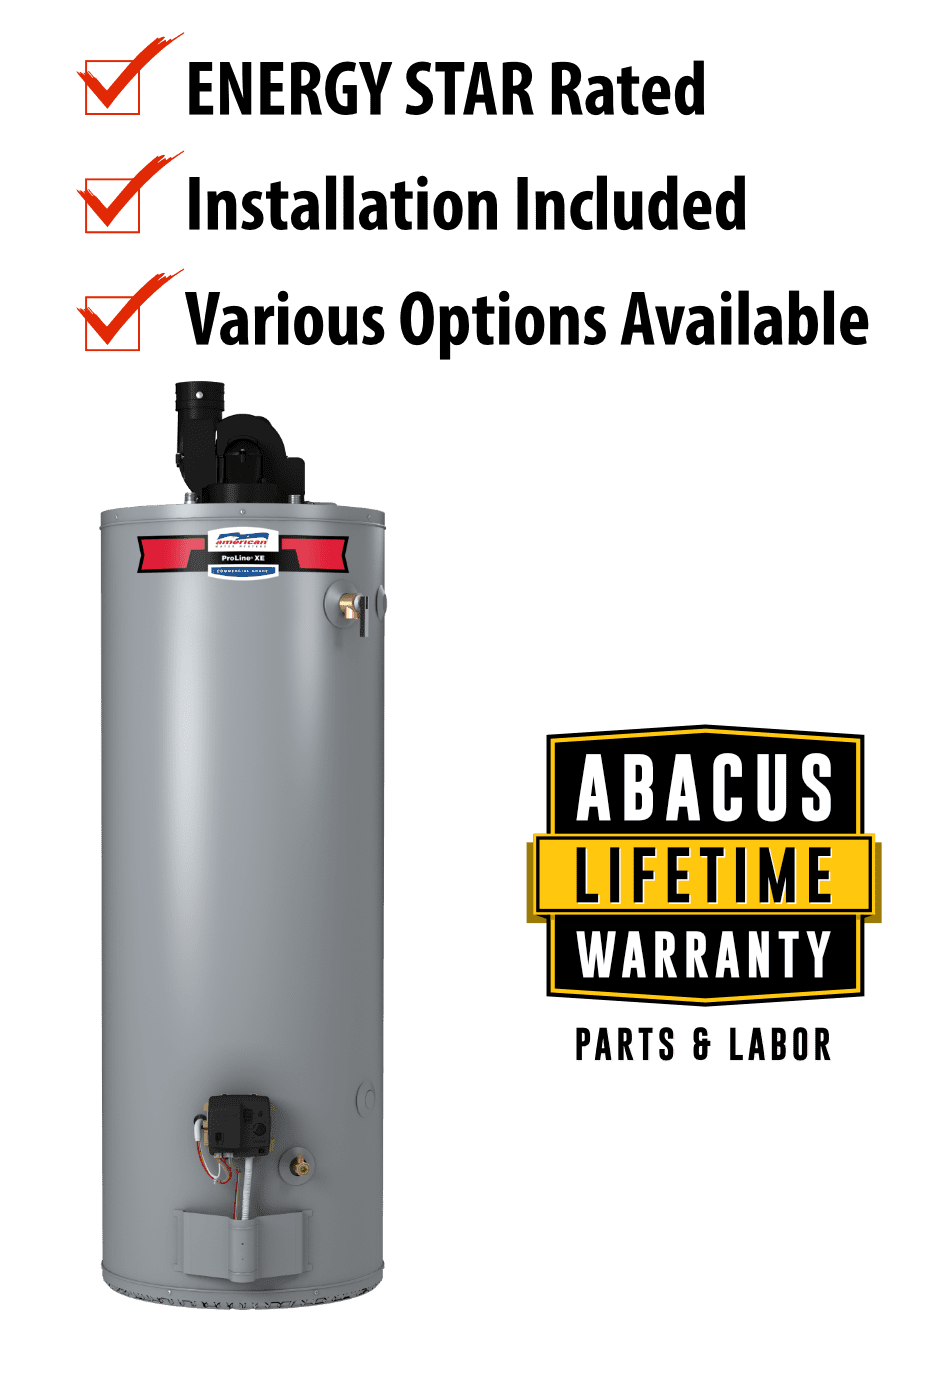 Abacus Austin Water Heater Lifetime Warranty